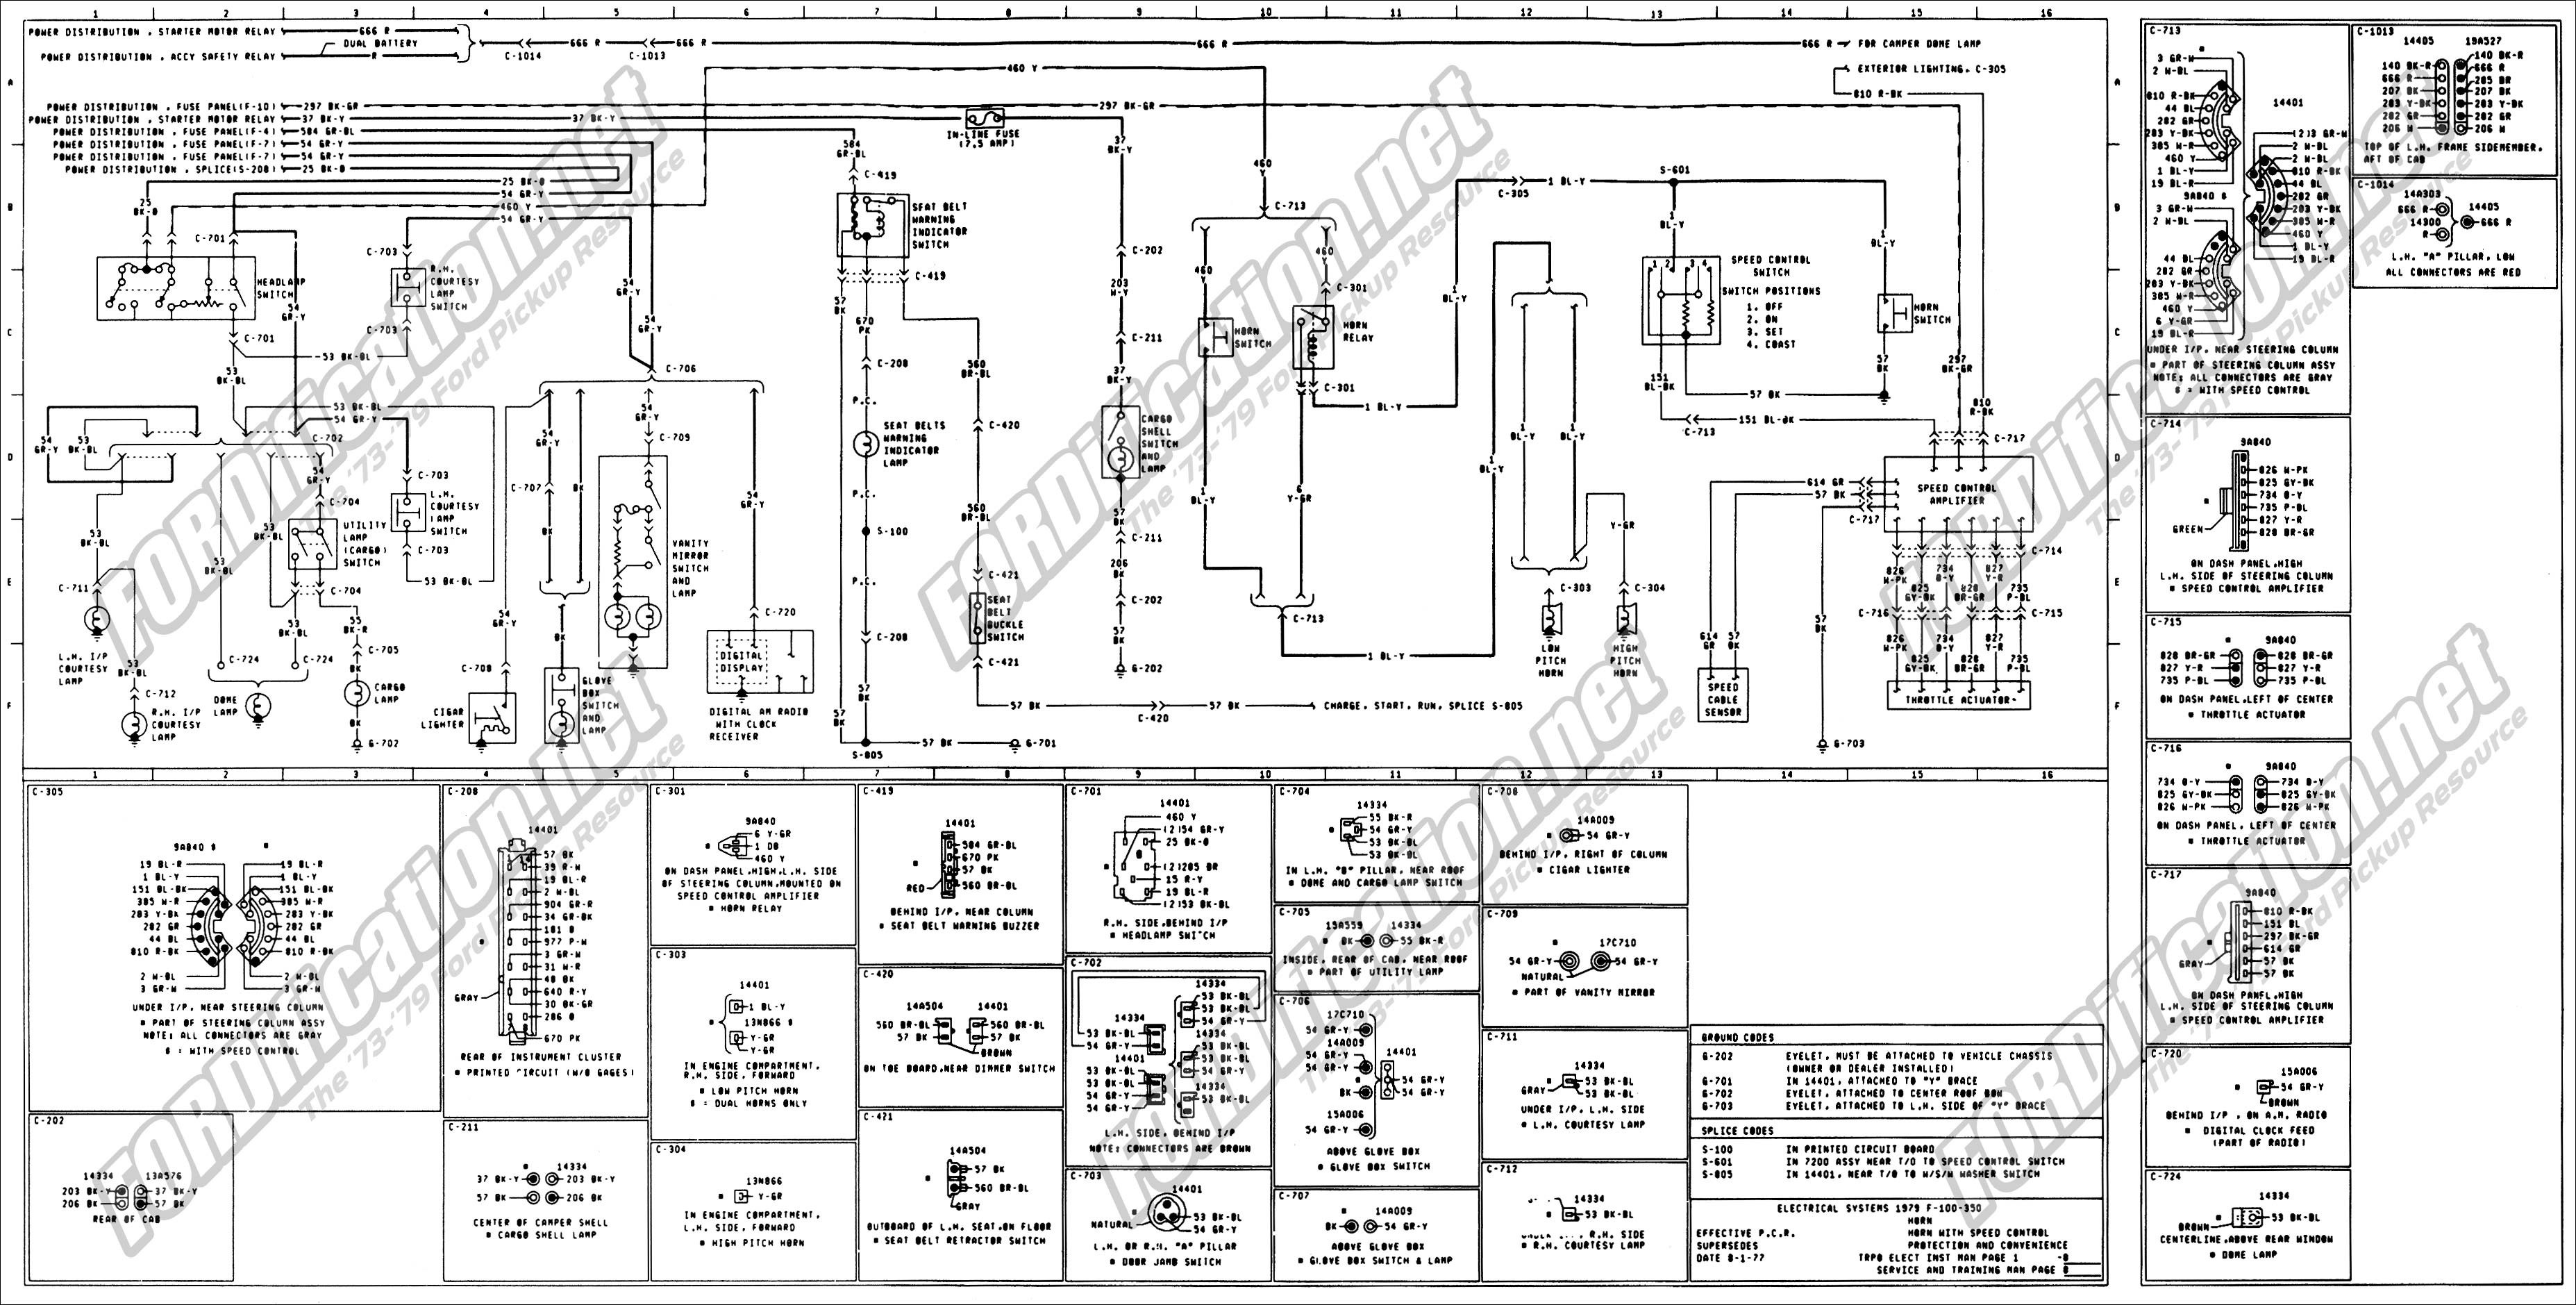 1973 1979 Ford Truck Wiring Diagrams & Schematics Fordification Net 1976 Ford F 250 Wiring Diagram Ford F250 Wiring Diagrams